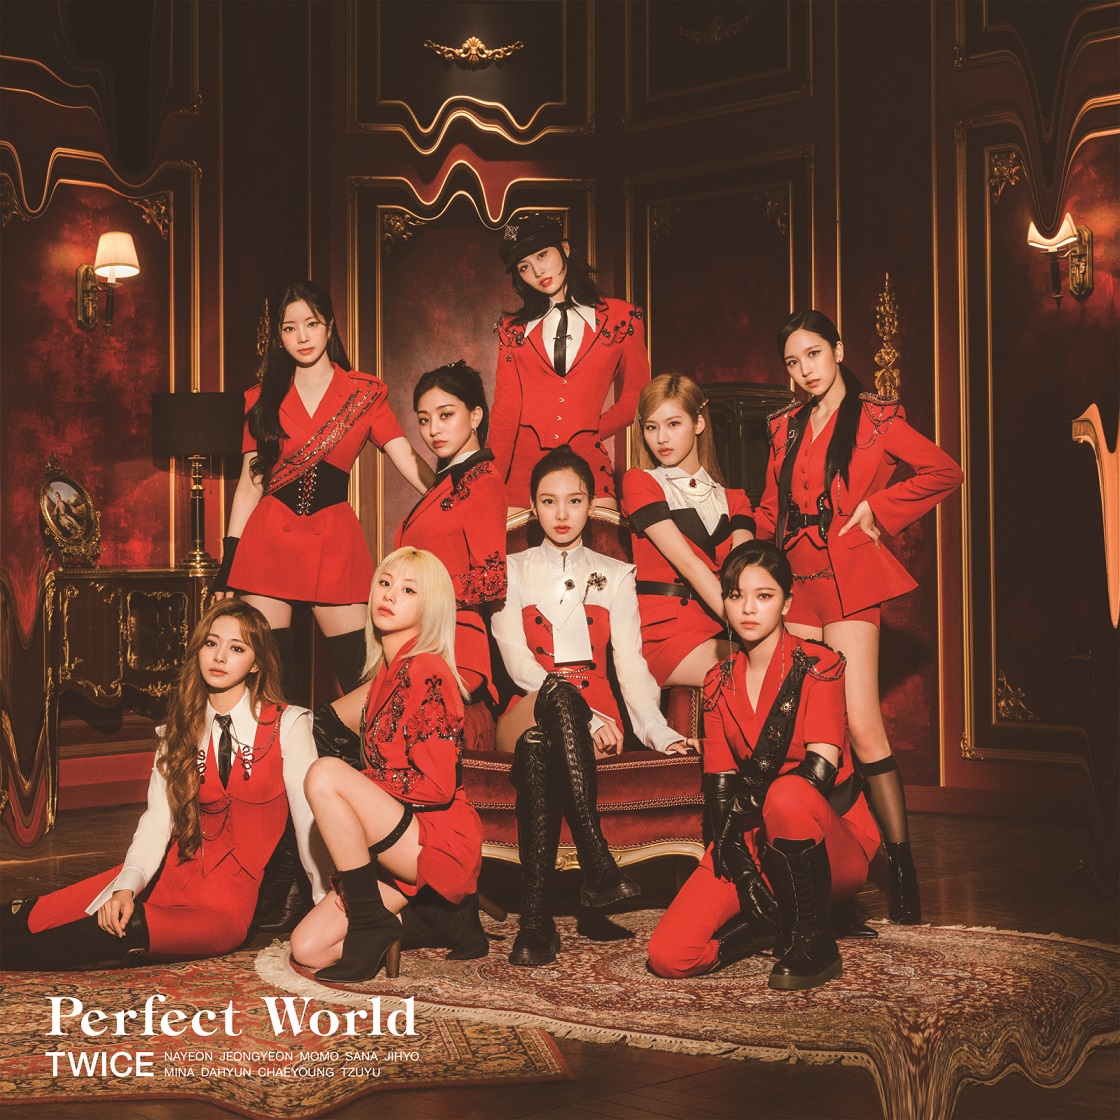 『TWICE - Good at Love 歌詞』収録の『Perfect World』ジャケット